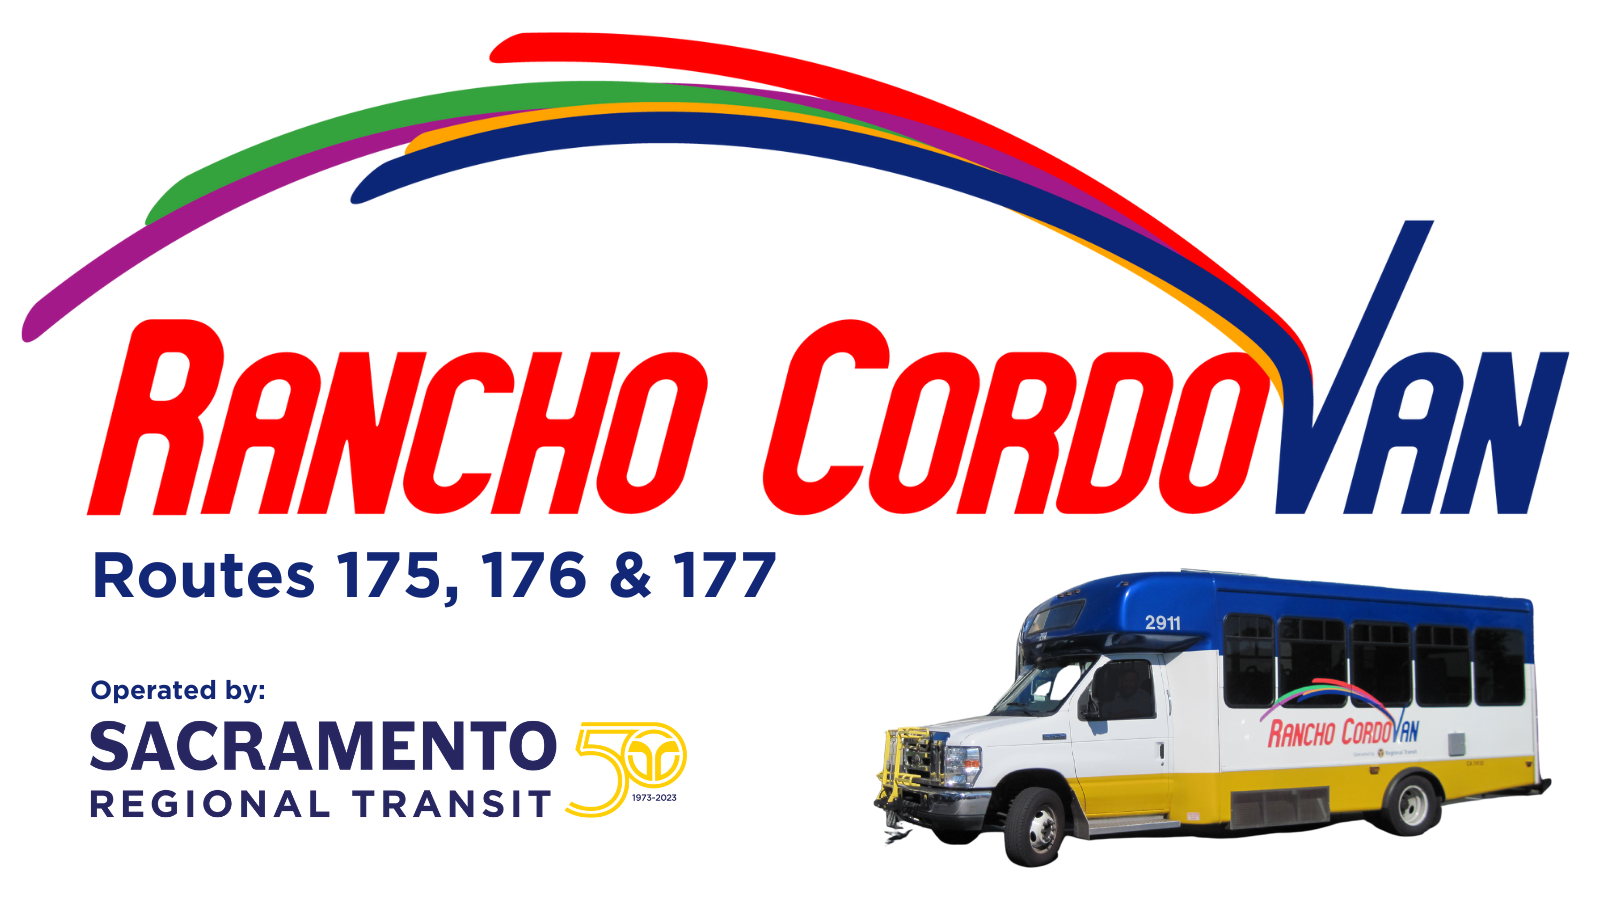 Rancho Cordovan Routes 175, 176. 177. Photo of Rancho Cordovan bus.